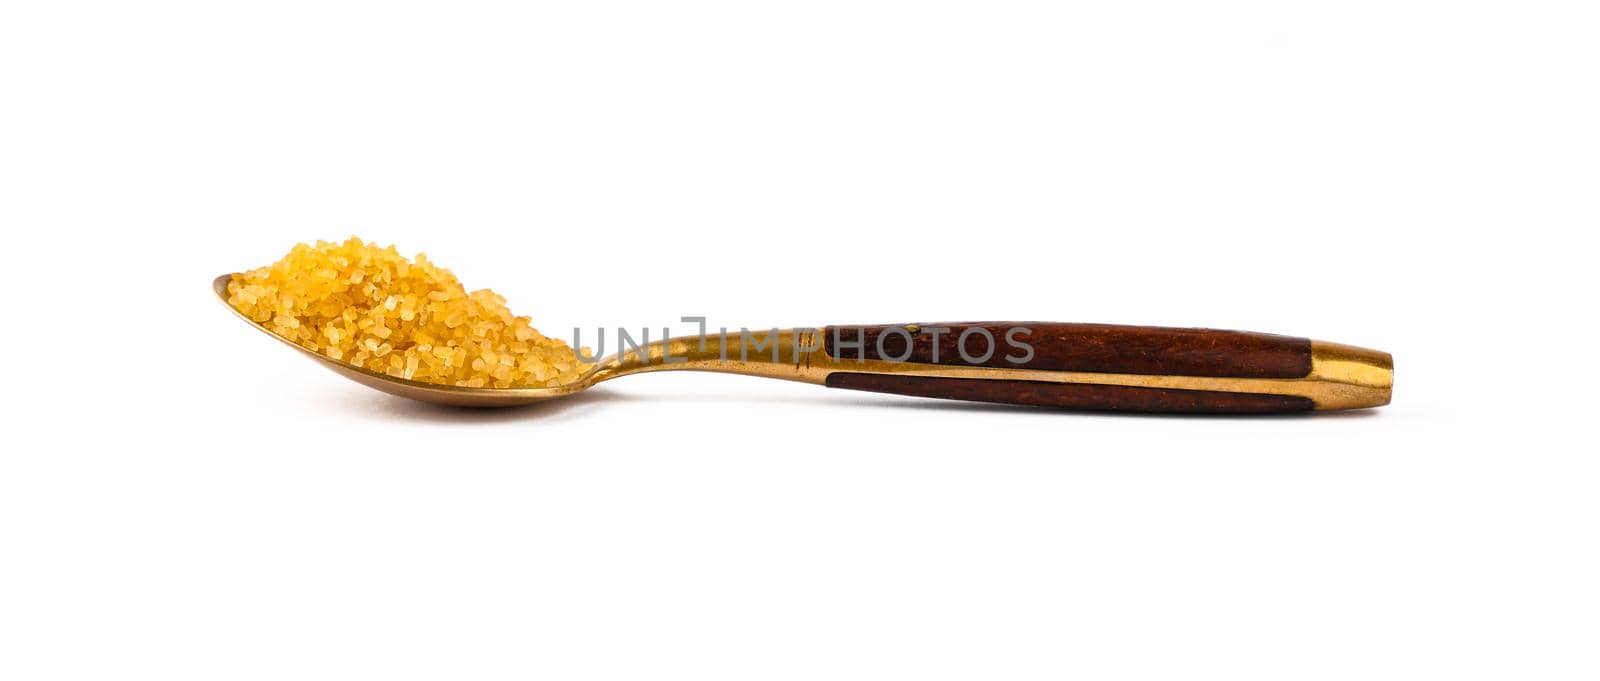 Vintage golden spoon full of brown cane sugar by BreakingTheWalls